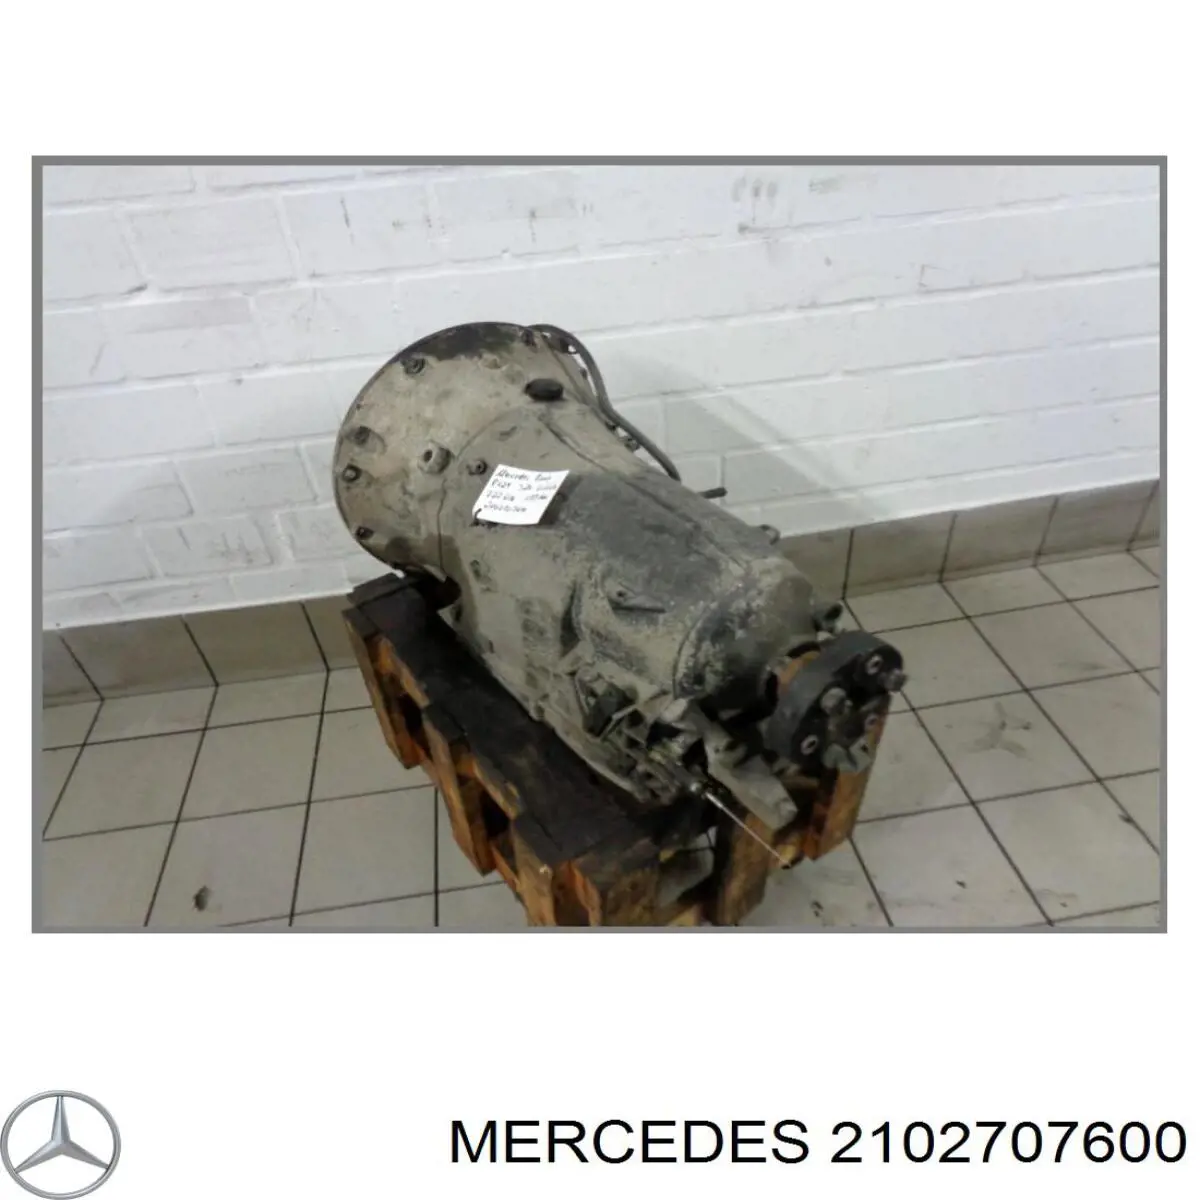 2102707600 Mercedes акпп в сборе (автоматическая коробка передач)